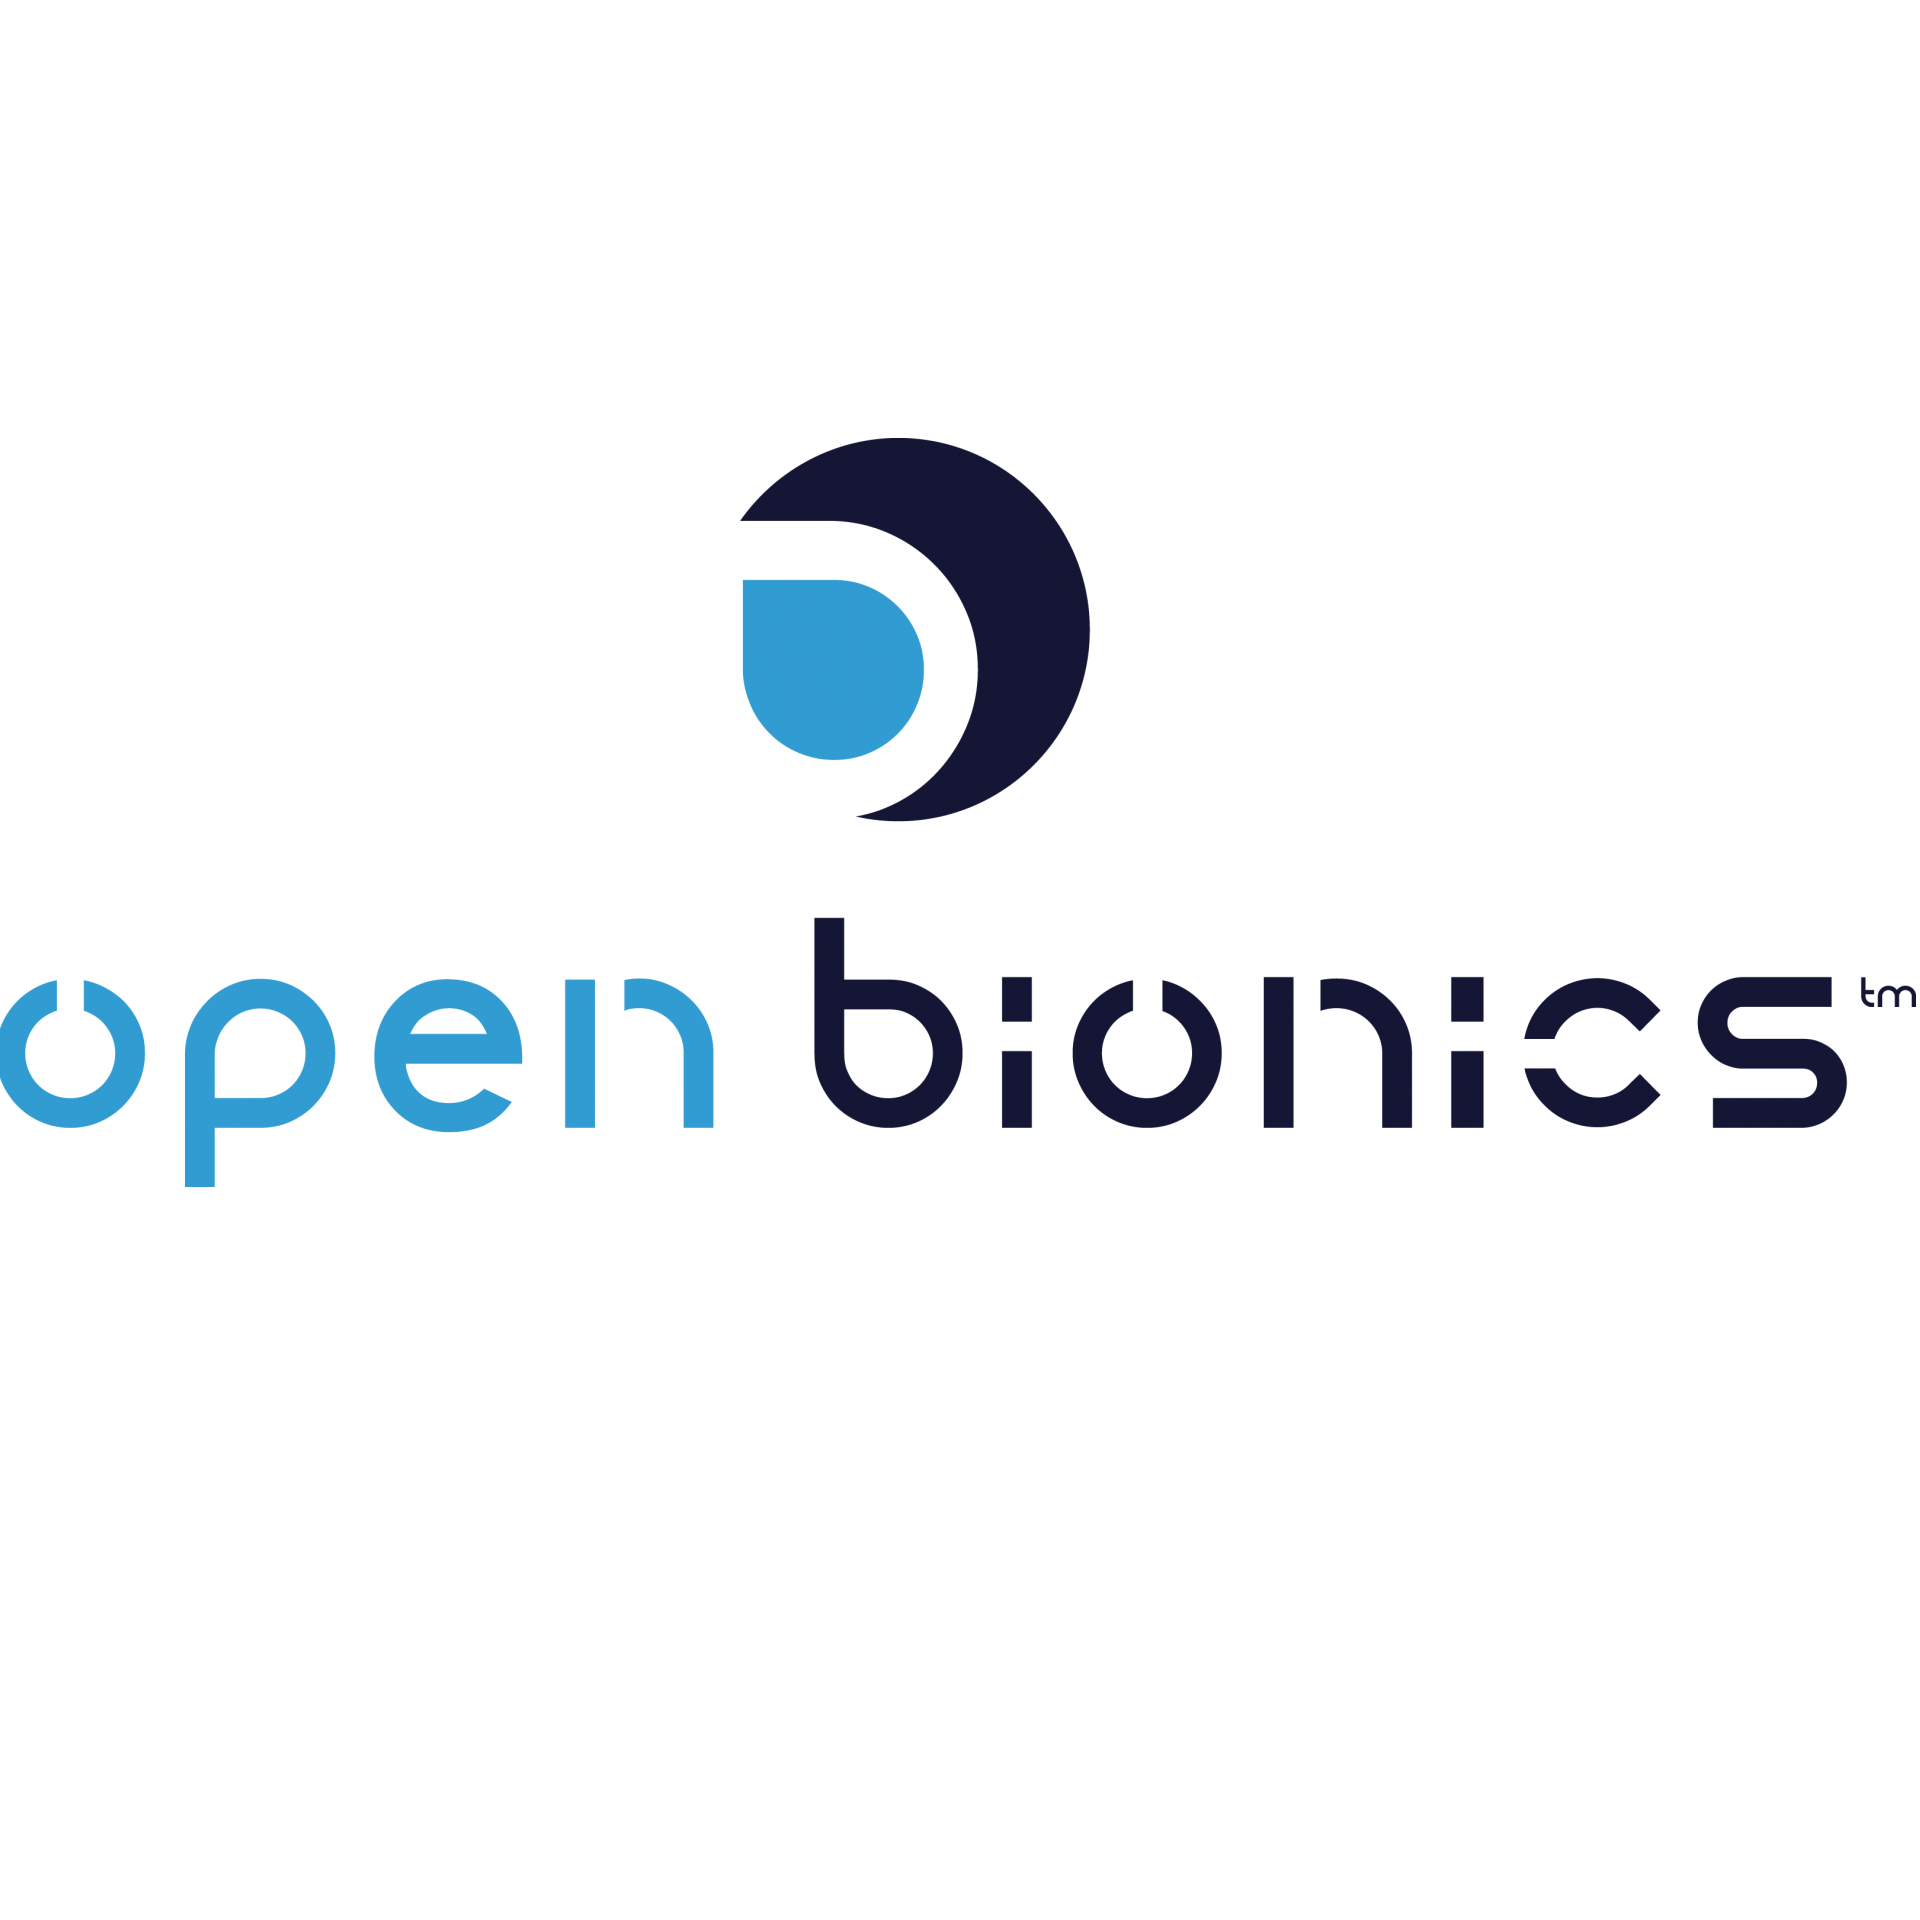 openbionics-logo.png